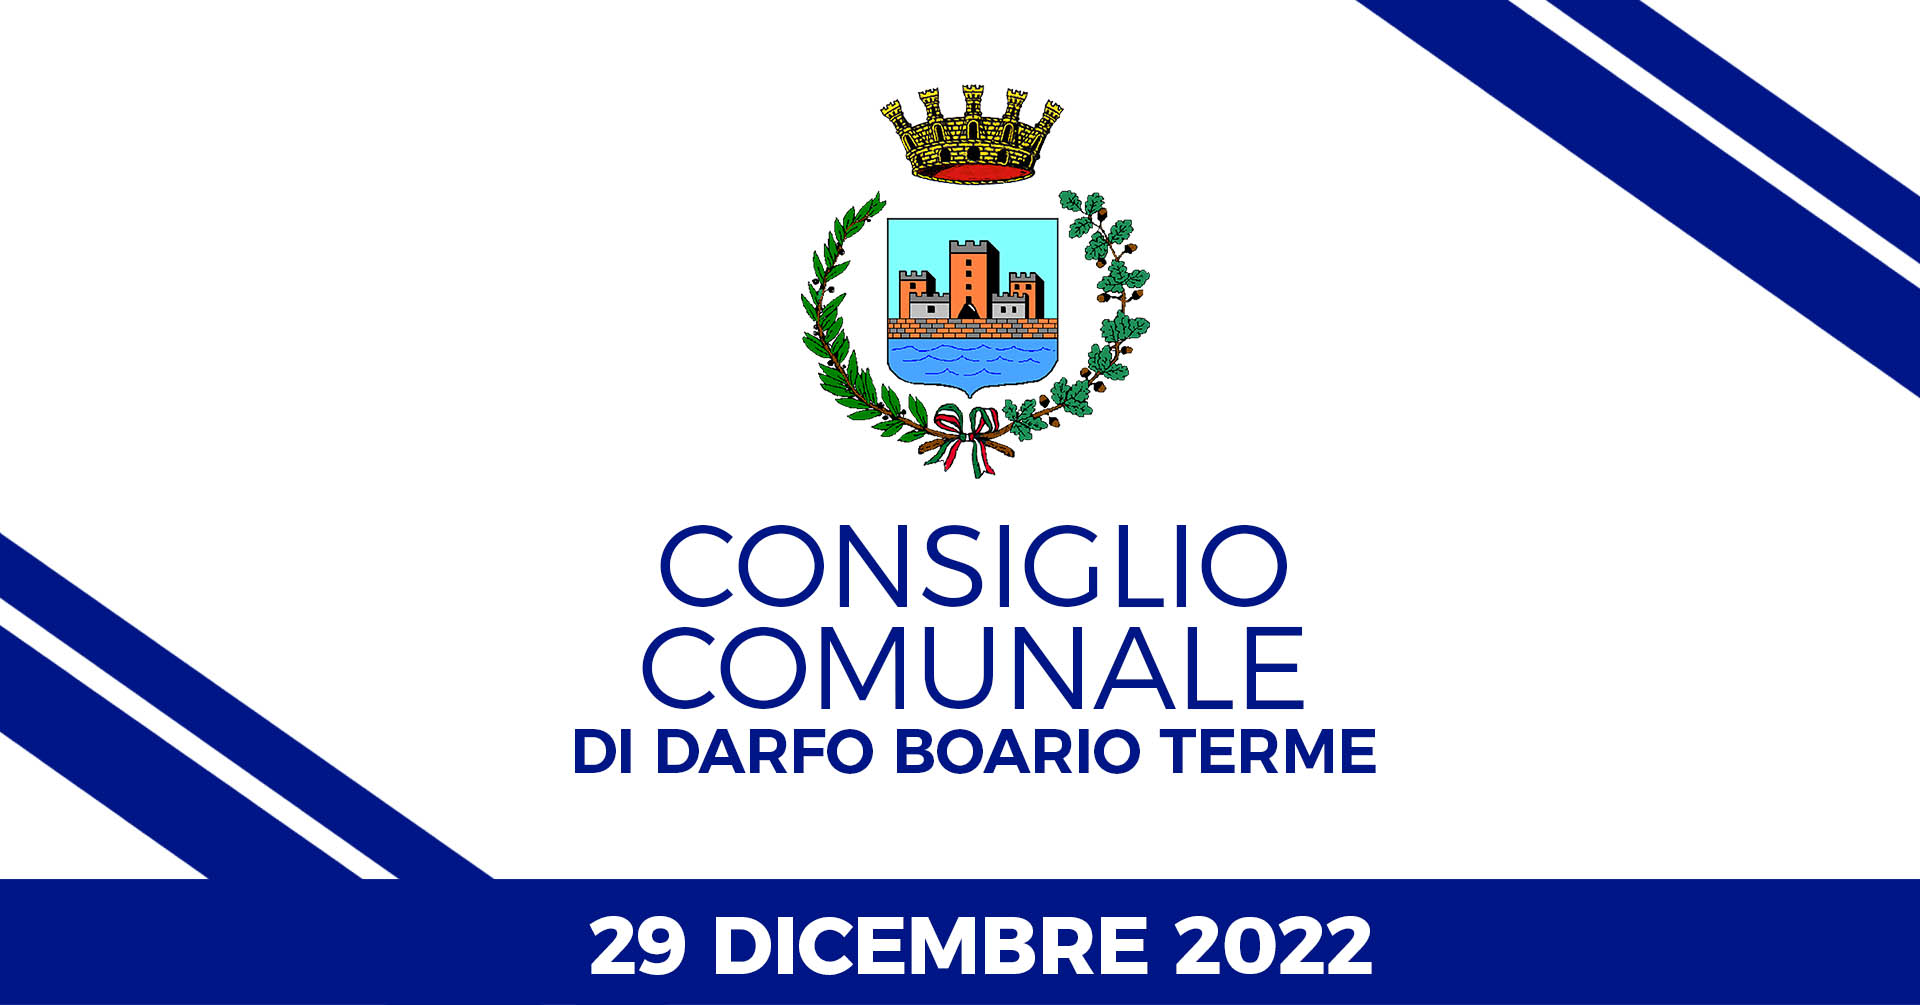 Consiglio Comunale di Darfo Boario Terme del 29 dicembre 2022